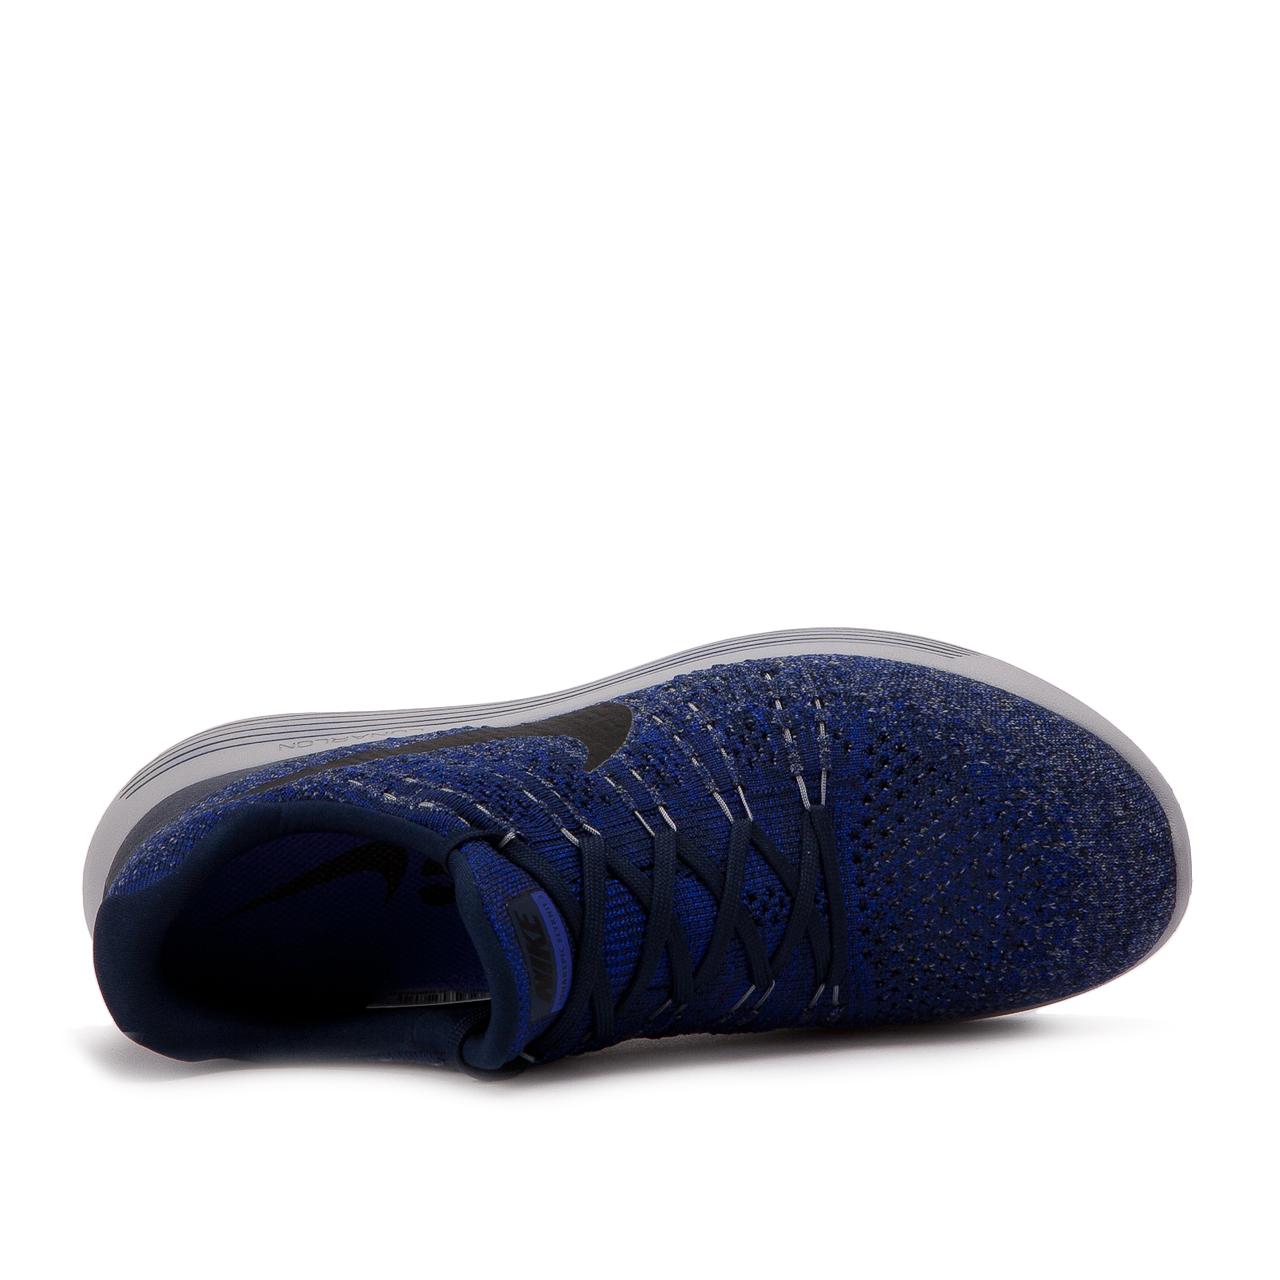 Nike Nike Lunarepic Low Flyknit 2 in Navy (Blue) for Men - Lyst